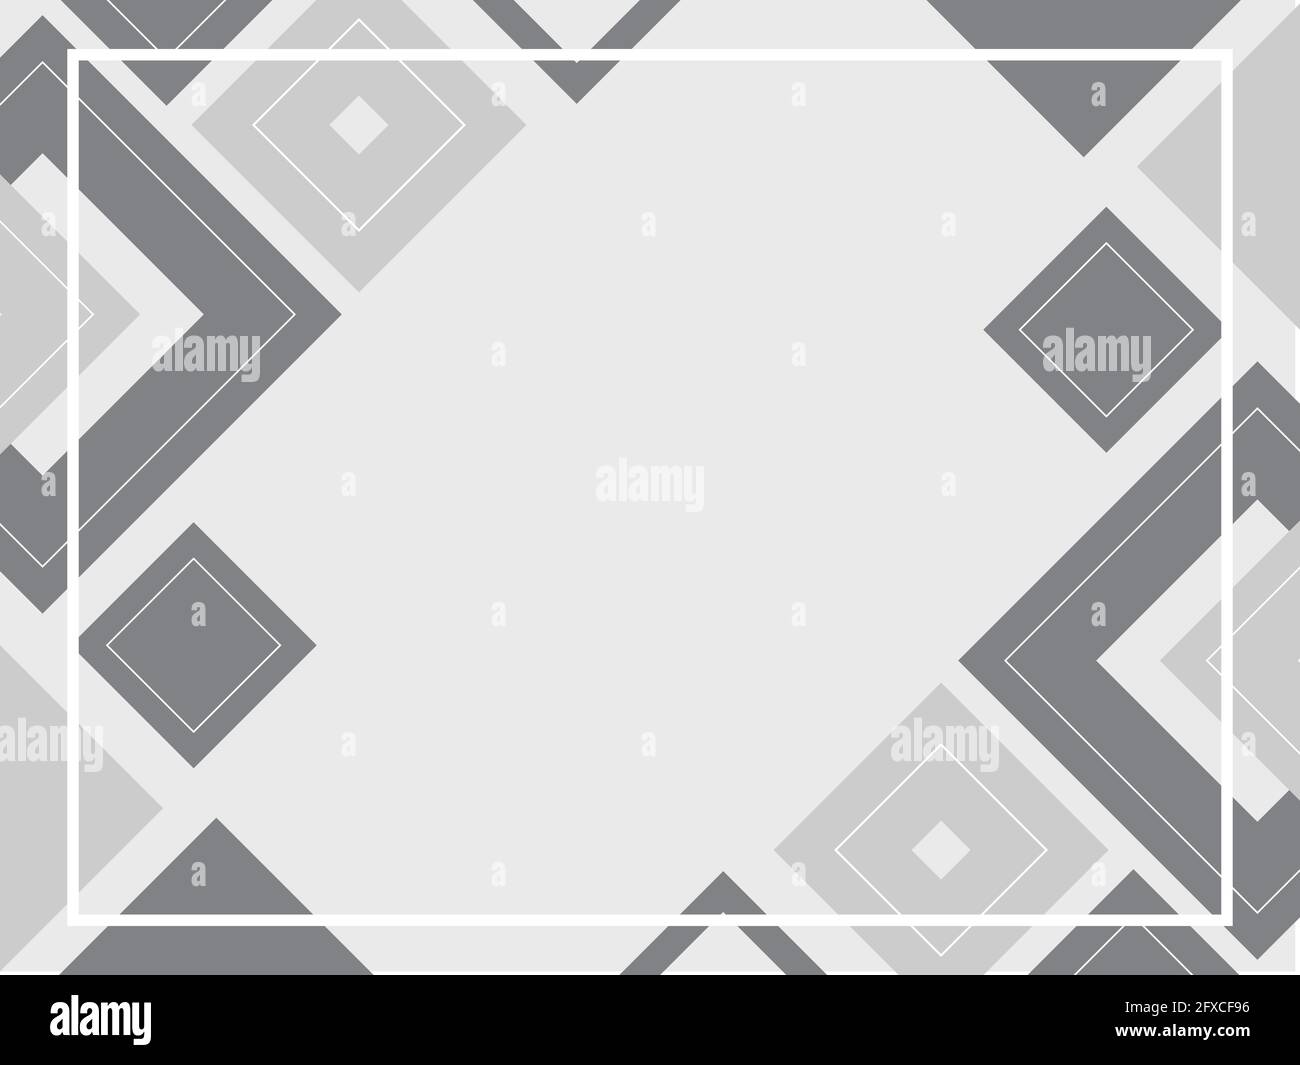 Forme triangolari e quadrate con spazio di copia, motivo grigio astratto di sfondo geometrico, modello a mosaico, disegno banner, colori bianco e nero, moderno Illustrazione Vettoriale